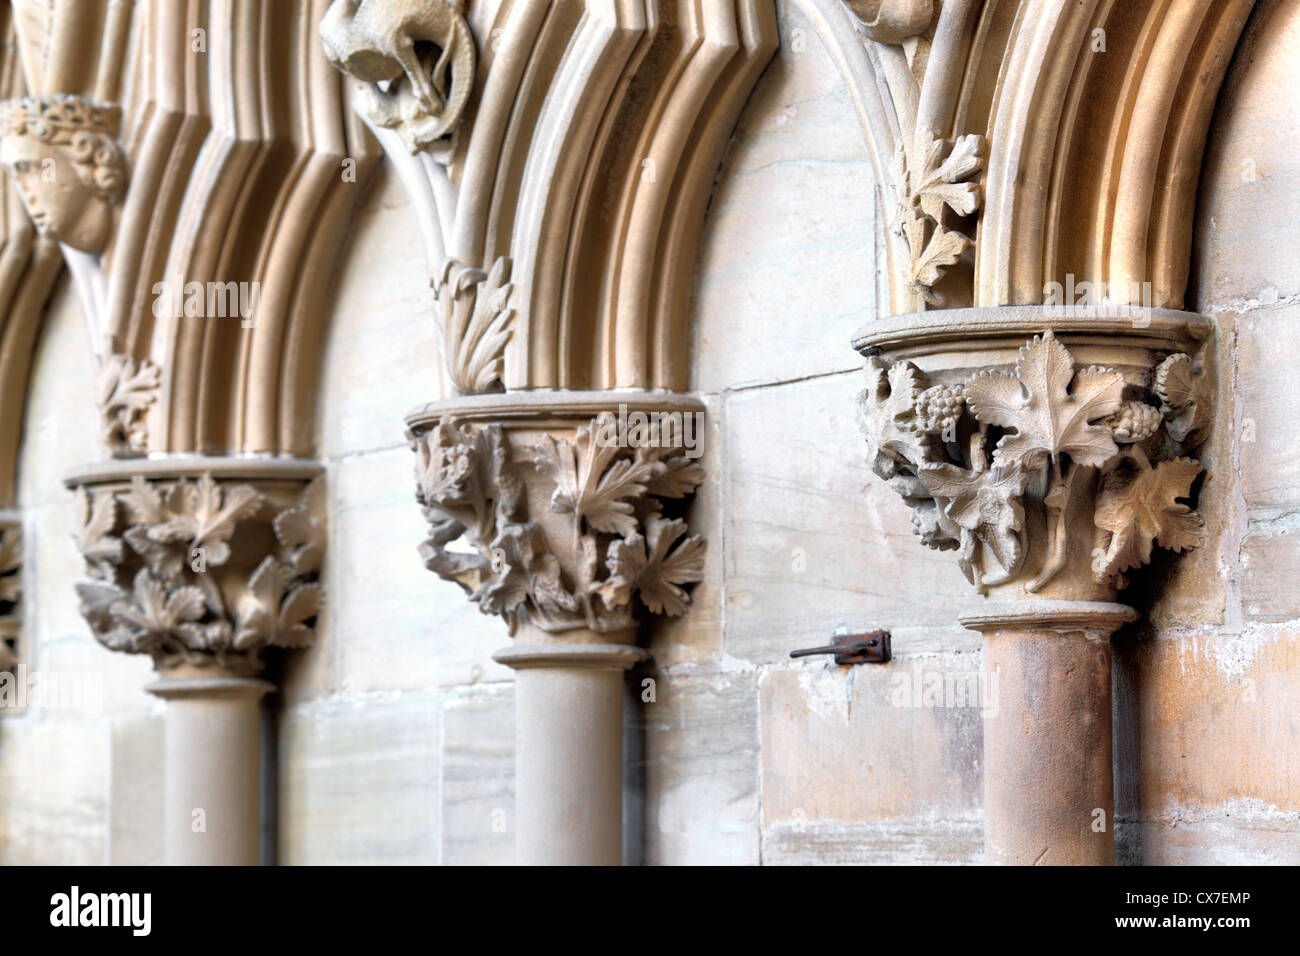 Feuillage sculpté dans la salle capitulaire, Southwell Minster, Southwell, Nottinghamshire, Angleterre, RU Banque D'Images